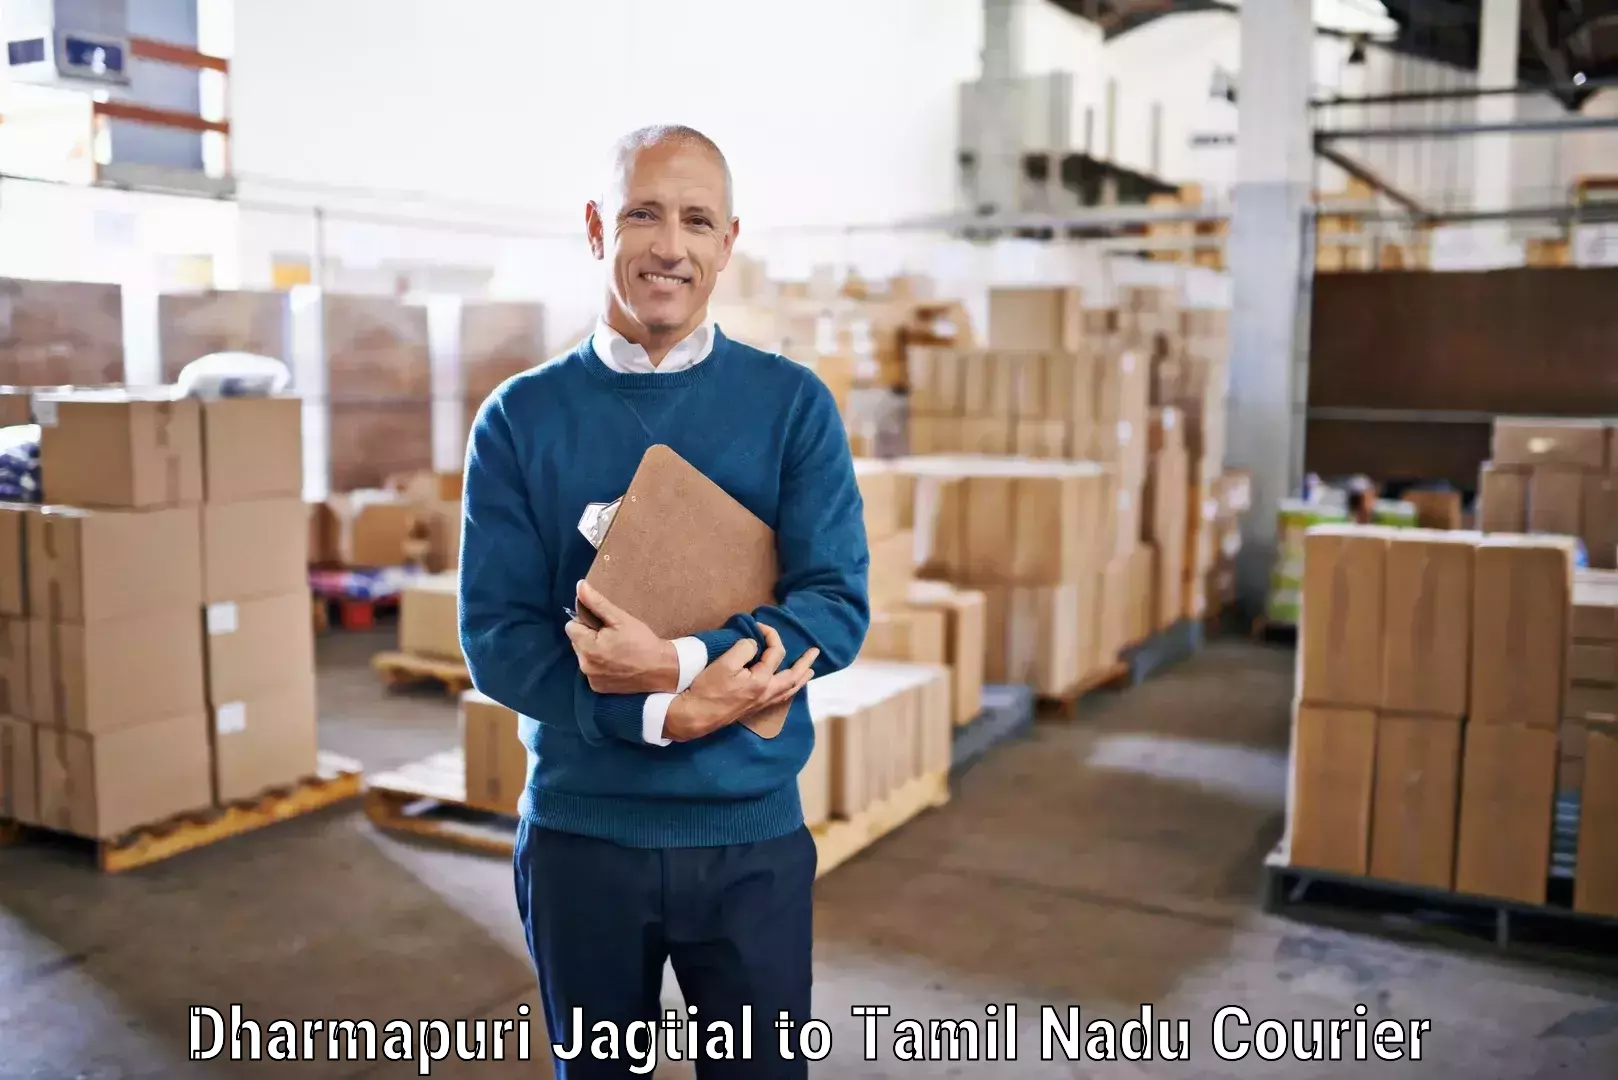 Custom courier packages Dharmapuri Jagtial to Alagappa University Karaikudi